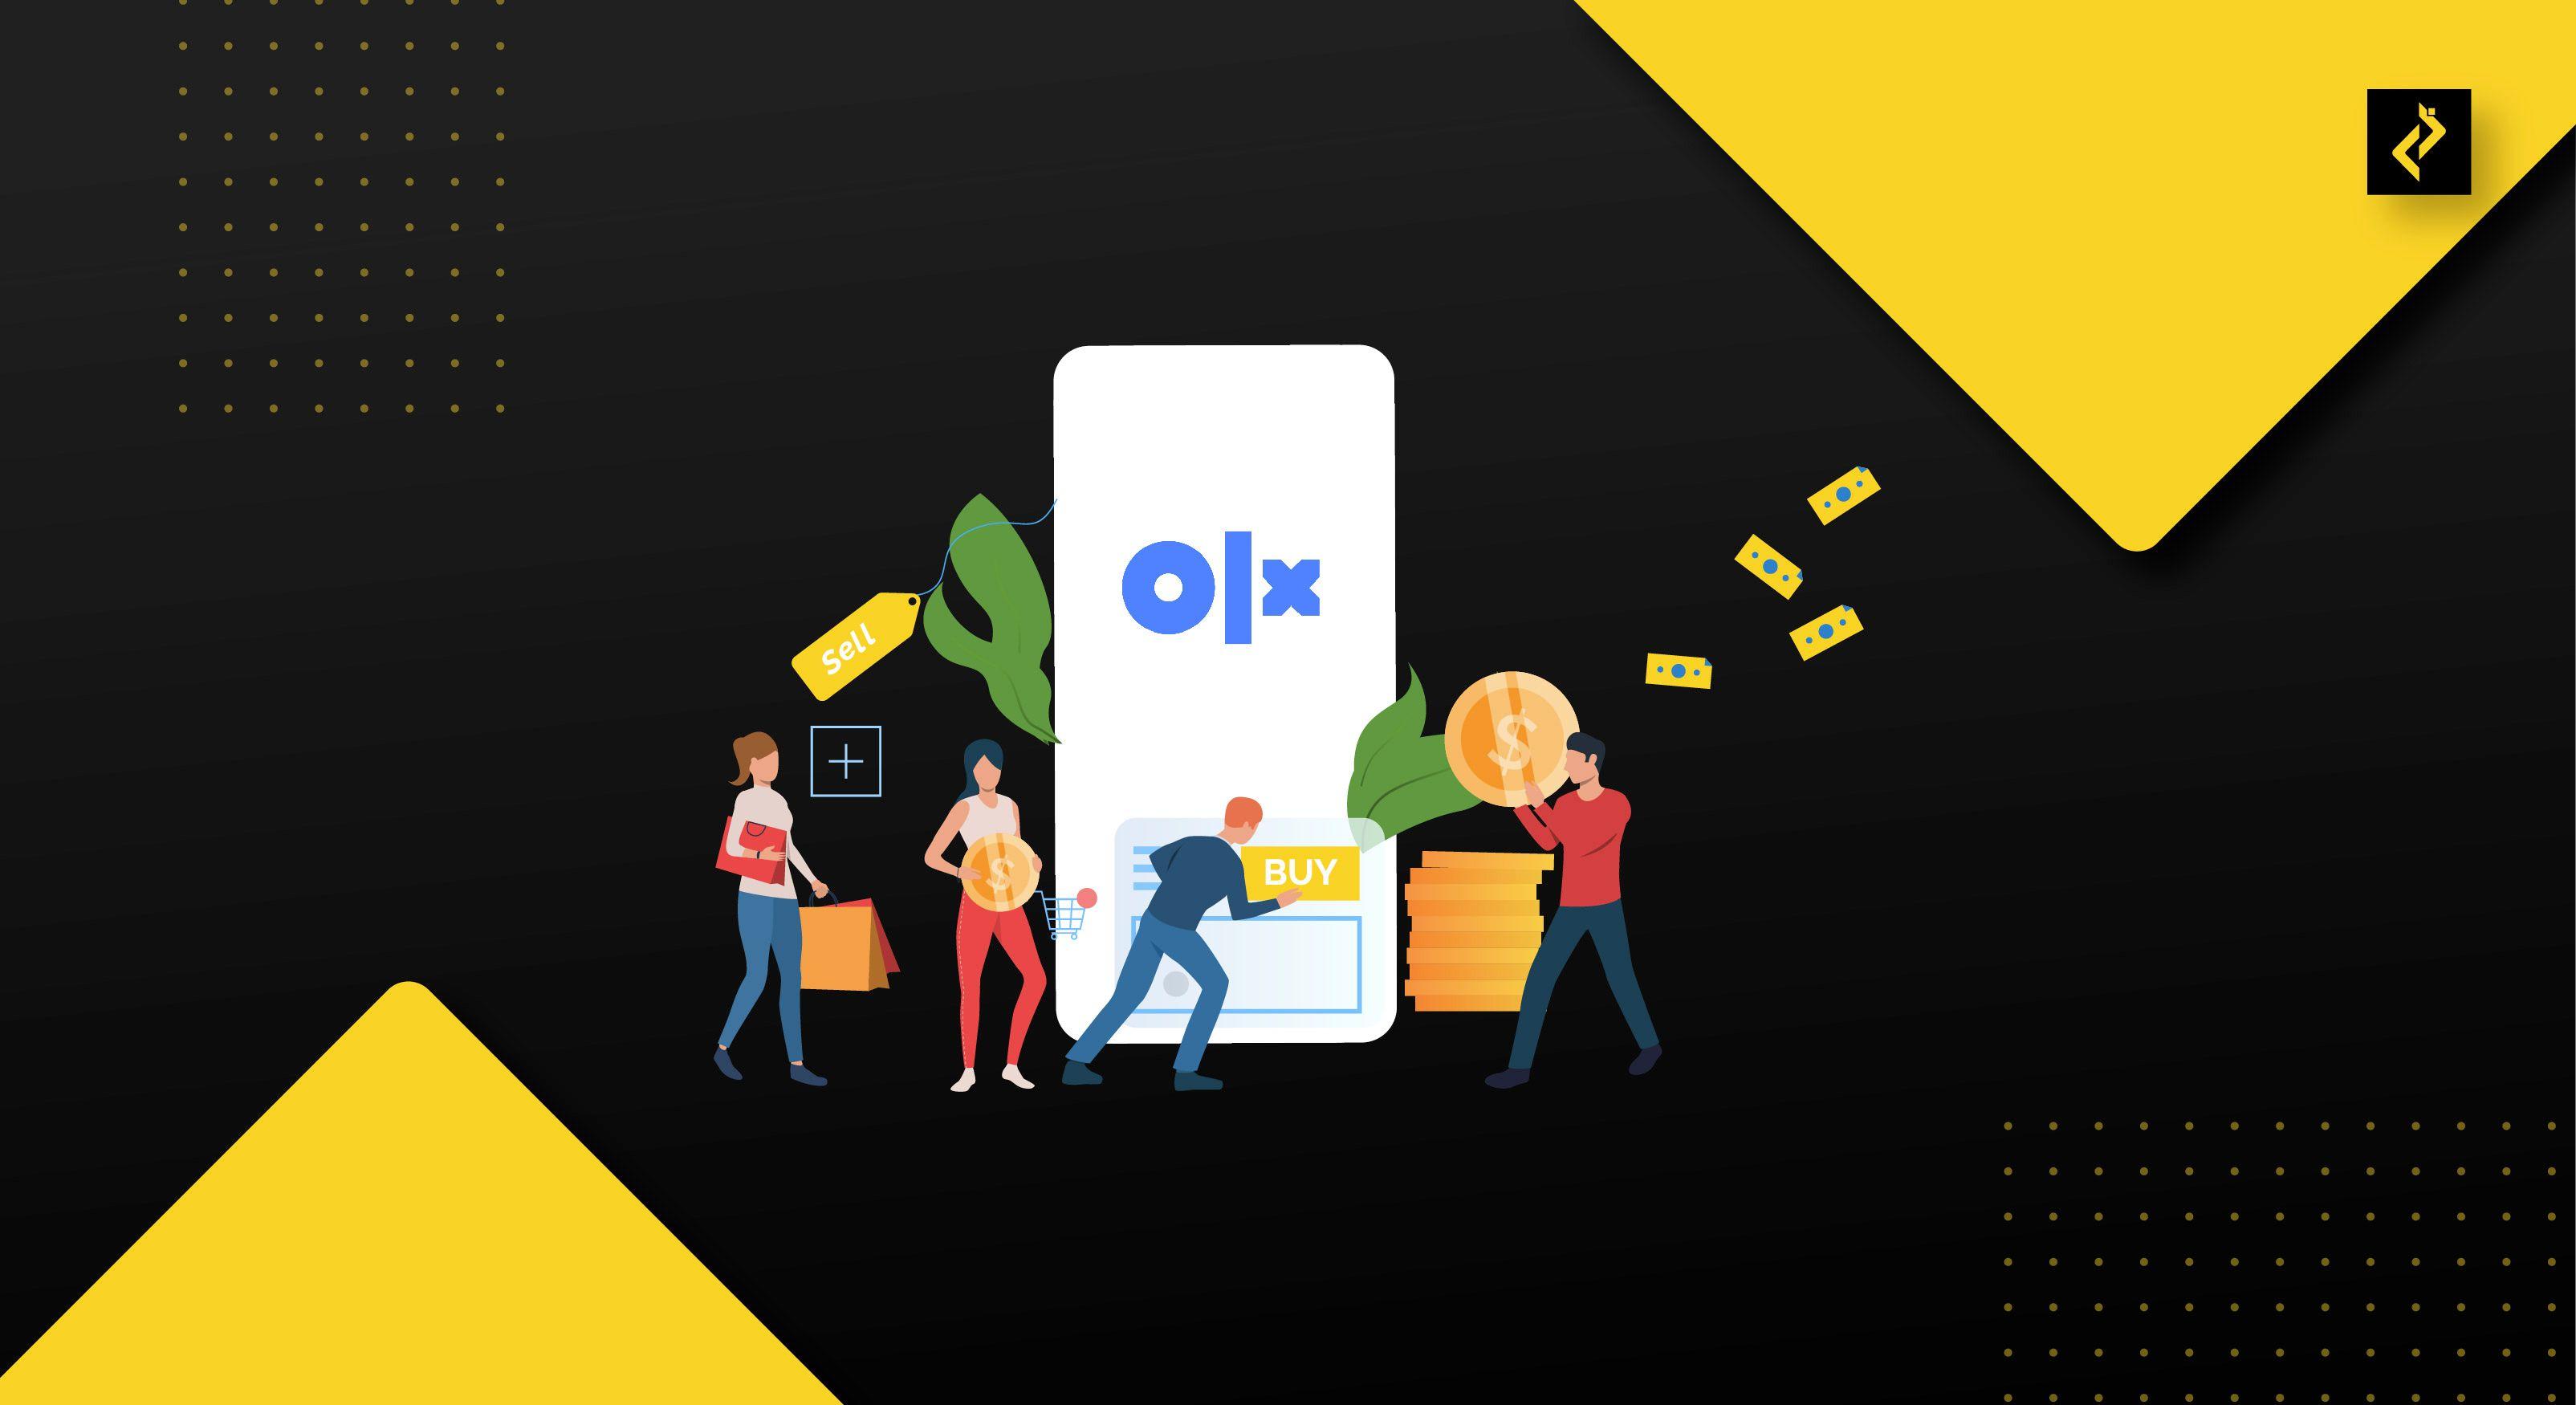 Build OLX Like App